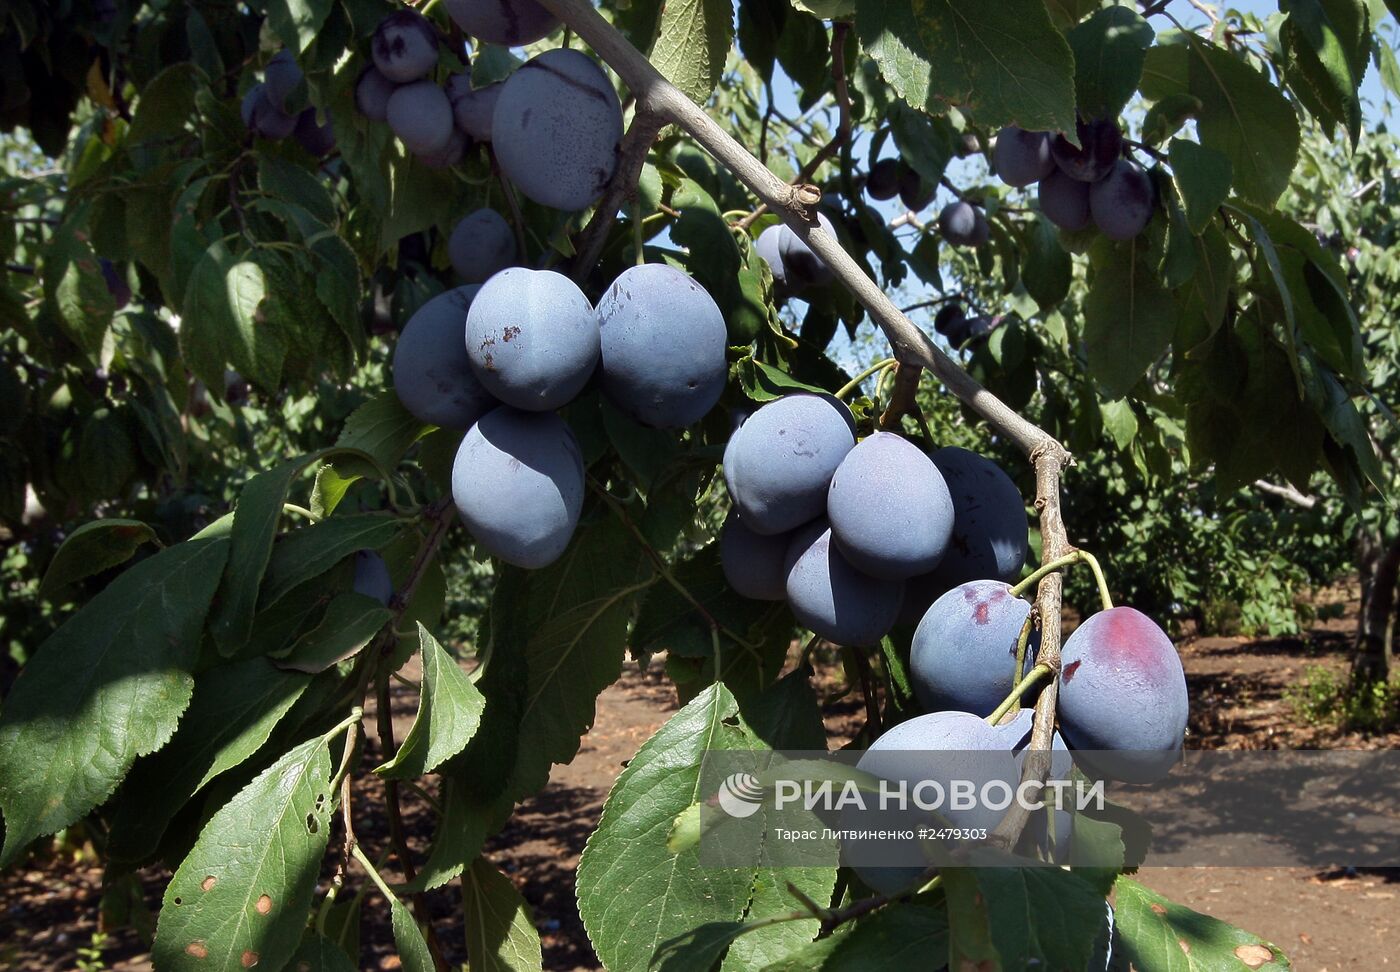 Сбор урожая персиков в Симферополе